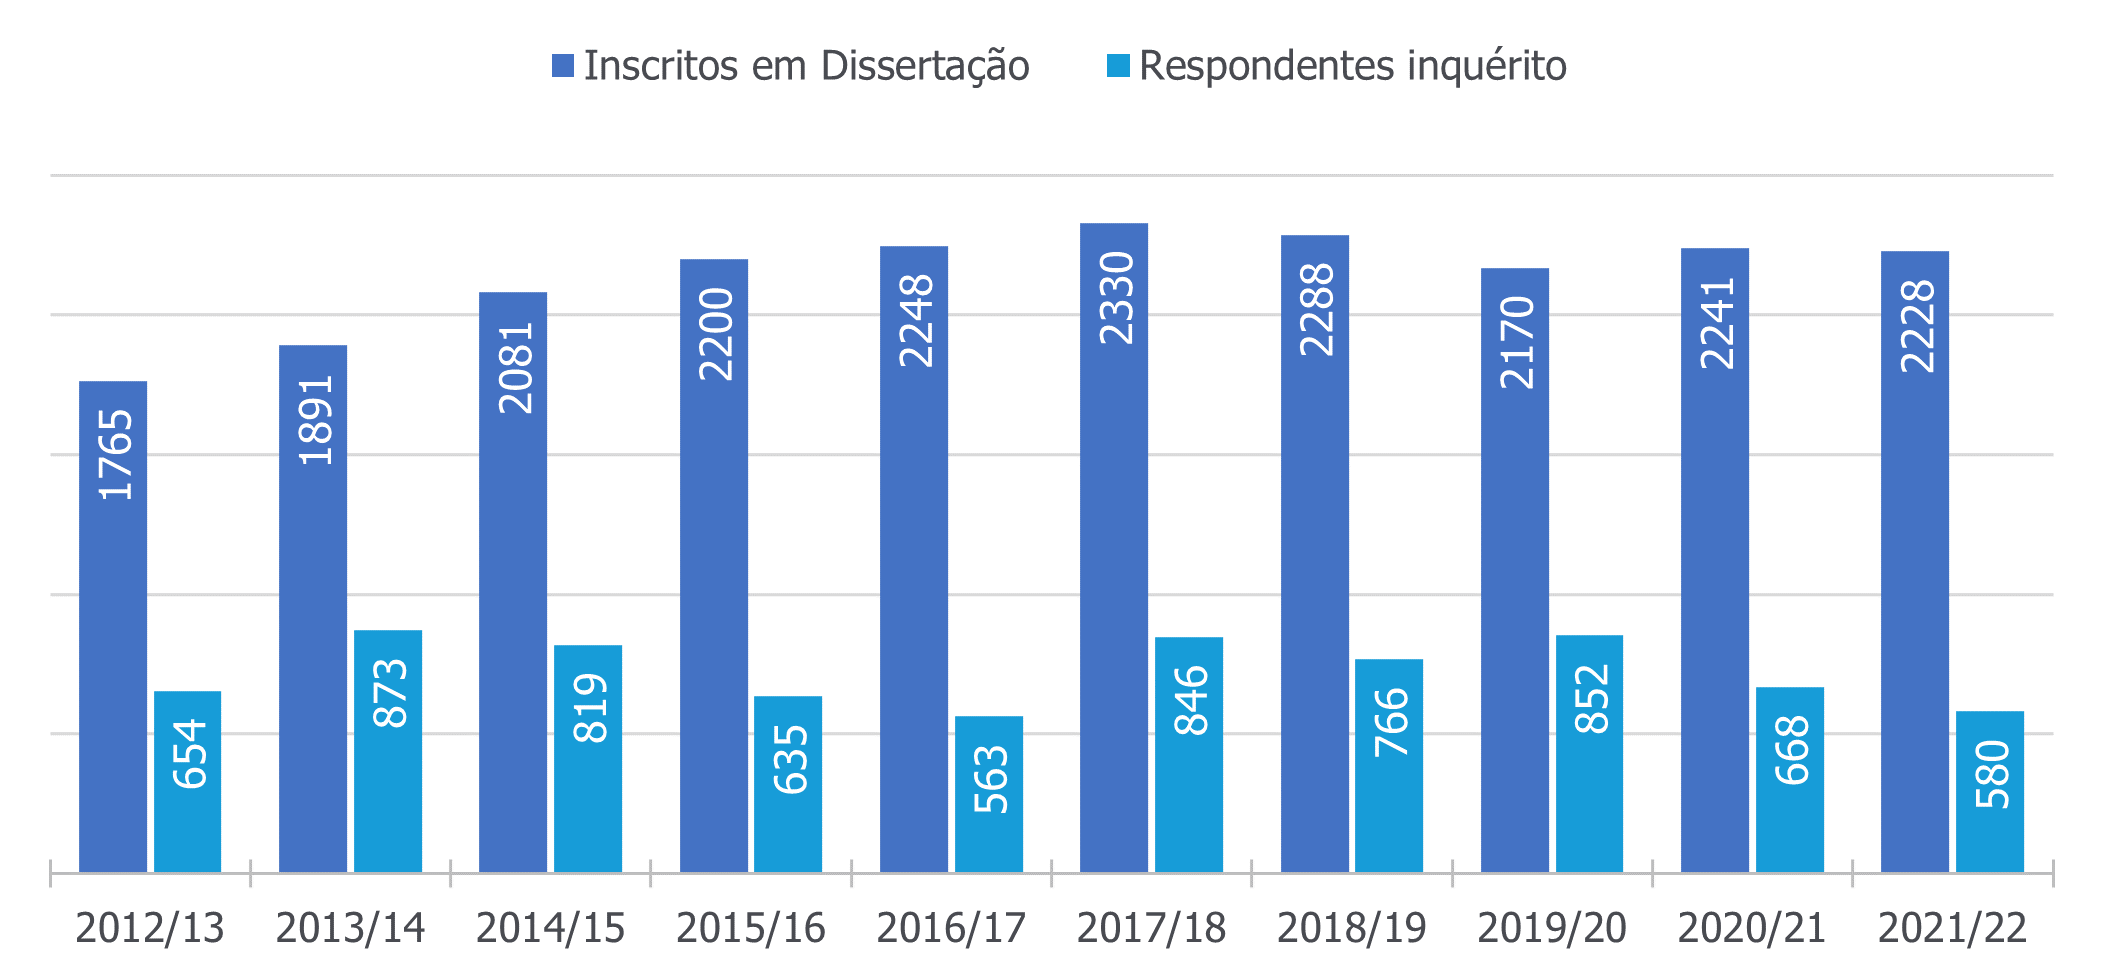 Total de respostas ao questionário entre os anos letivos de 2012/13 e 2021/22 versus total de respondentes.